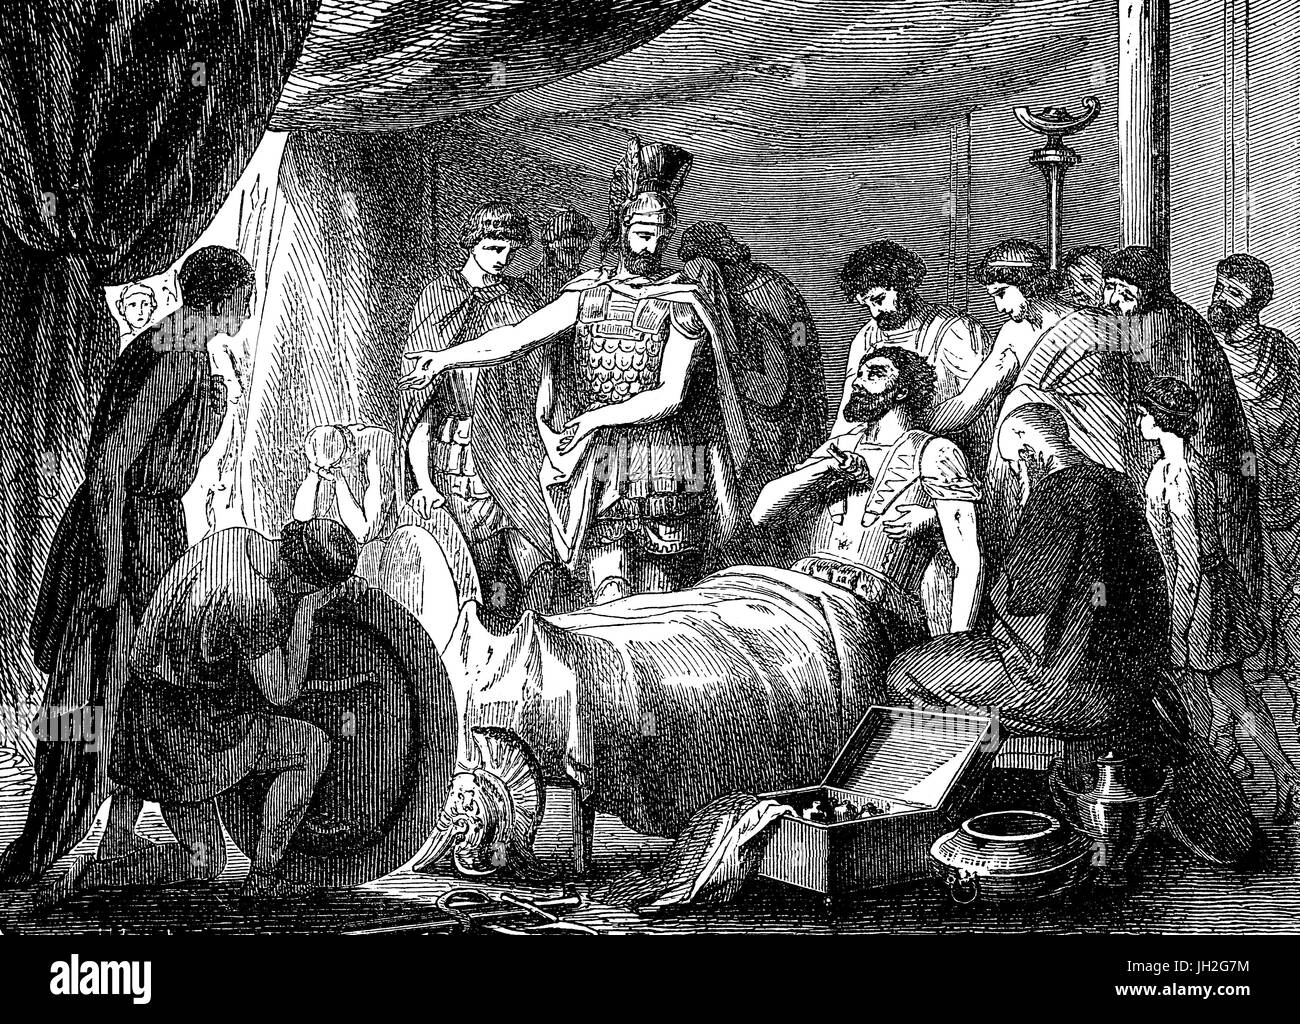 Während der Schlacht von Mantinea (362 v. Chr.) Epaminondas war Theban general und Staatsmann in die Brust getroffen von einem Speer, es scheint, dass die Spartaner in der Hoffnung, ihn zu töten, und damit die Thebaner demoralisierend absichtlich an Epaminondas zielten. Die Lanze brach, verlassen den Eisen-Punkt in seinem Körper und Epaminondas zusammengebrochen; die Thebaner um ihn herum kämpfte verzweifelt um die Spartaner Inbesitznahme seines Körpers zu stoppen. Stockfoto